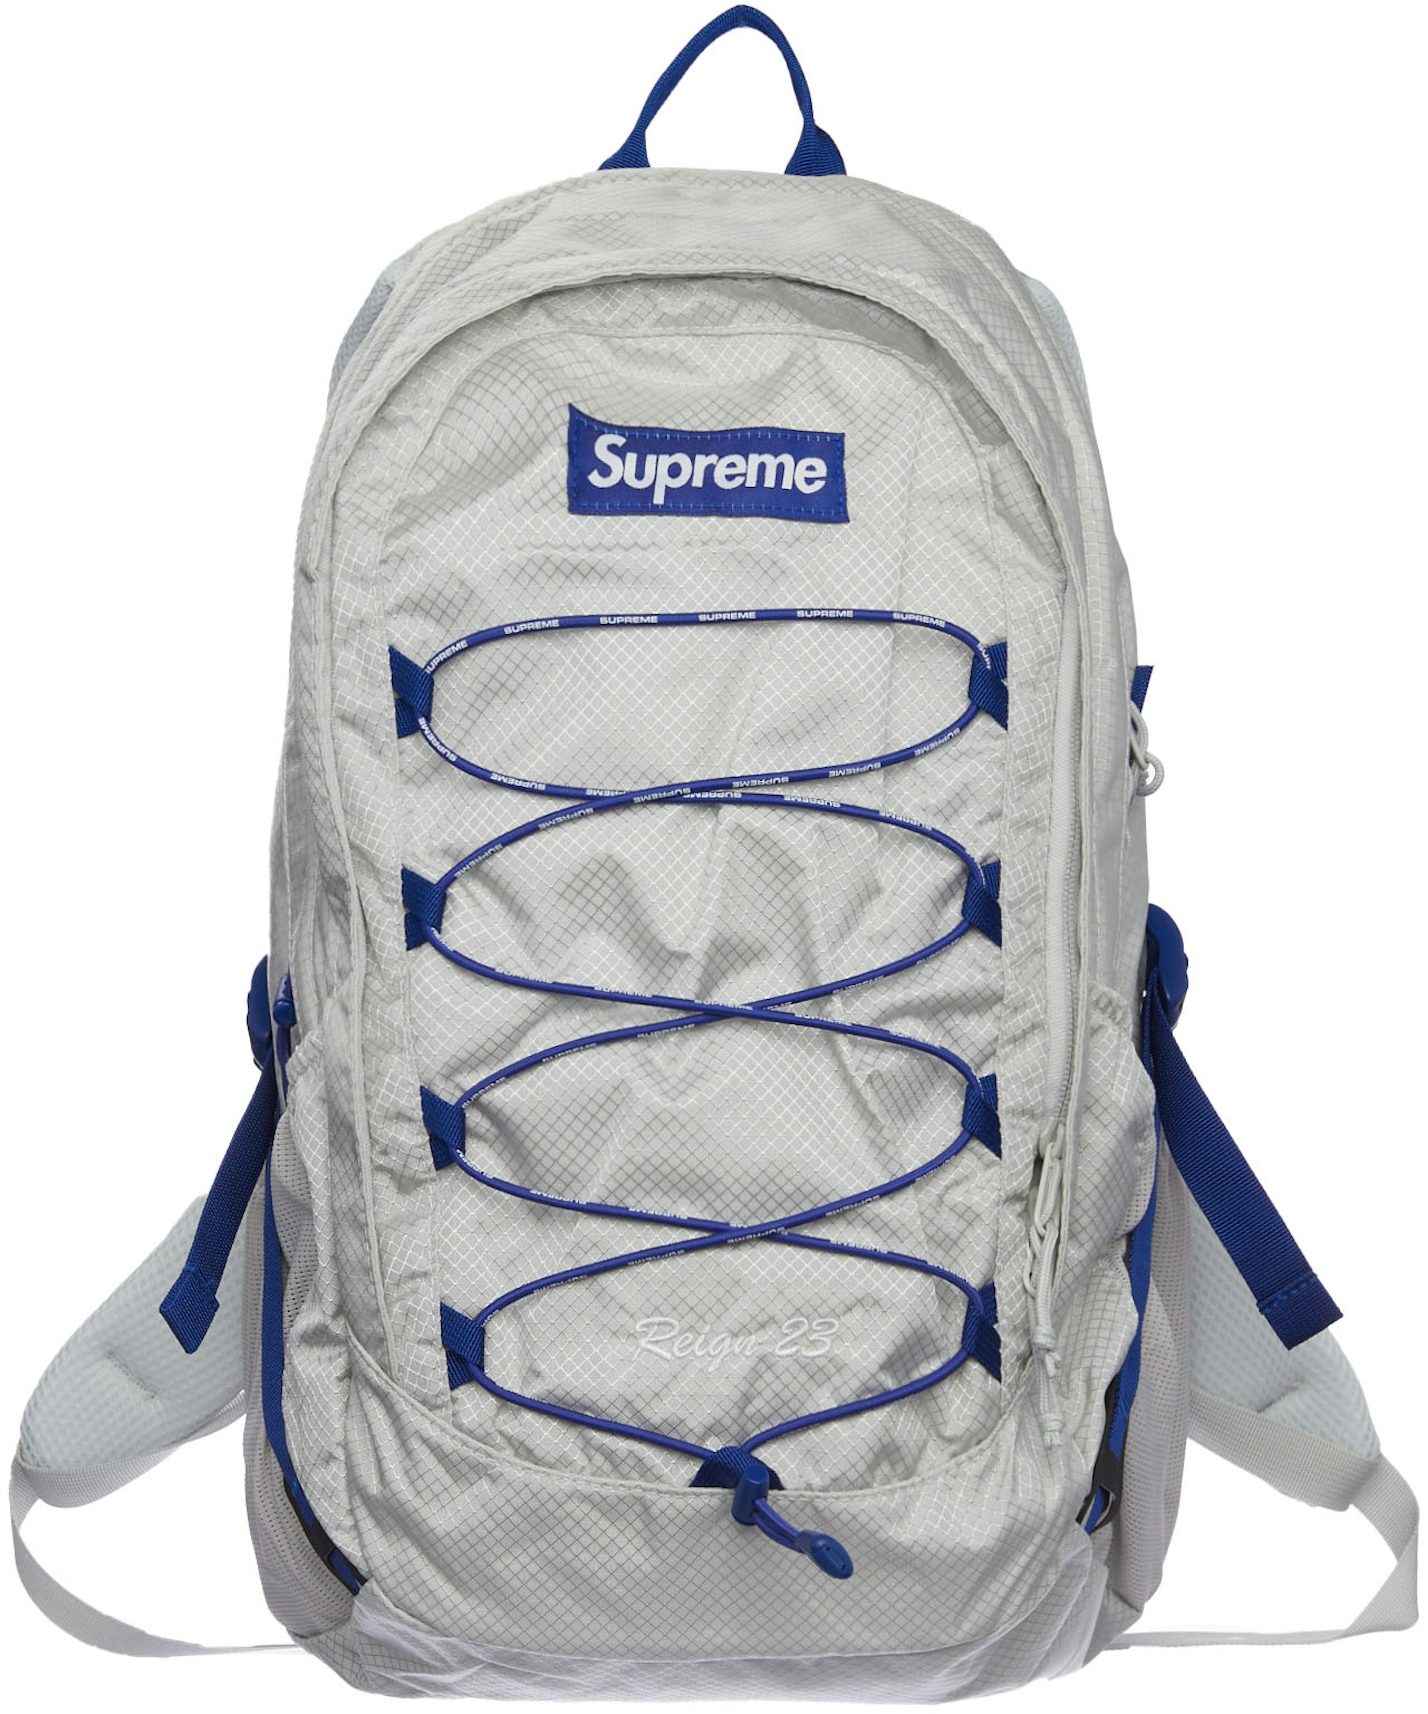 Supreme camo backpack bag 2003